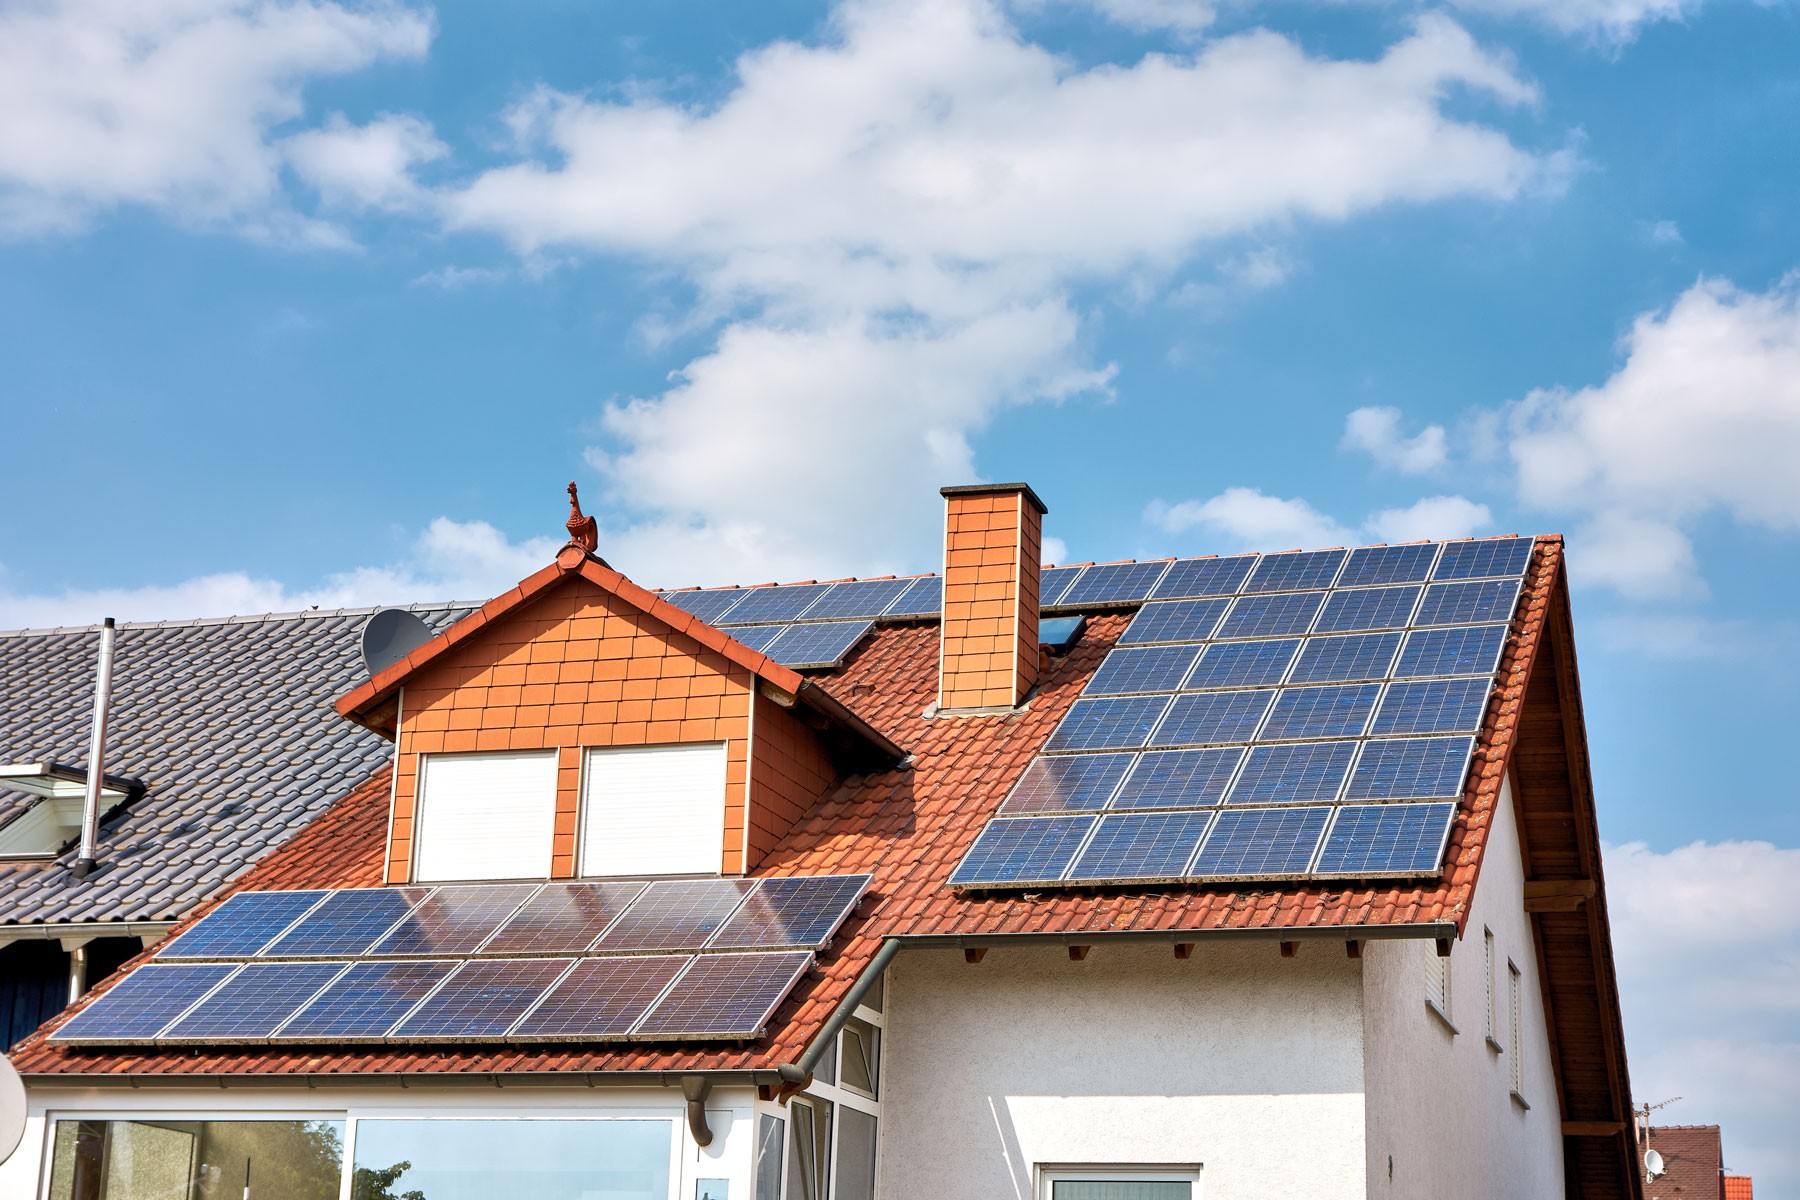 Einfamilienhaus mit Photovoltaikanlage Solaranlage Solarmodulen auf dem Dach